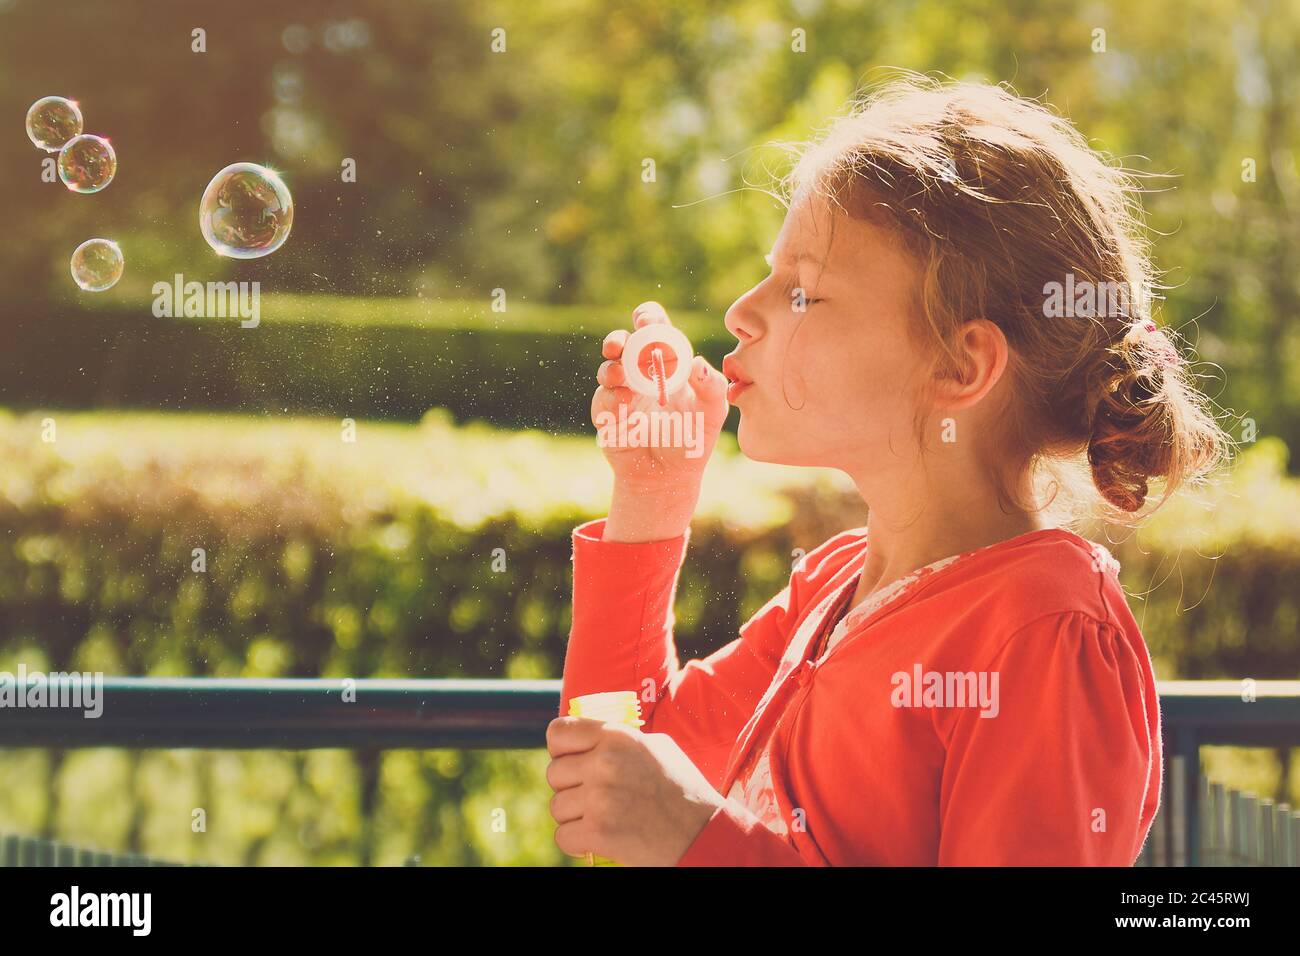 Jeune fille portant une veste orange soufflant des bulles dans le parc pendant la lumière de l'heure d'or Banque D'Images